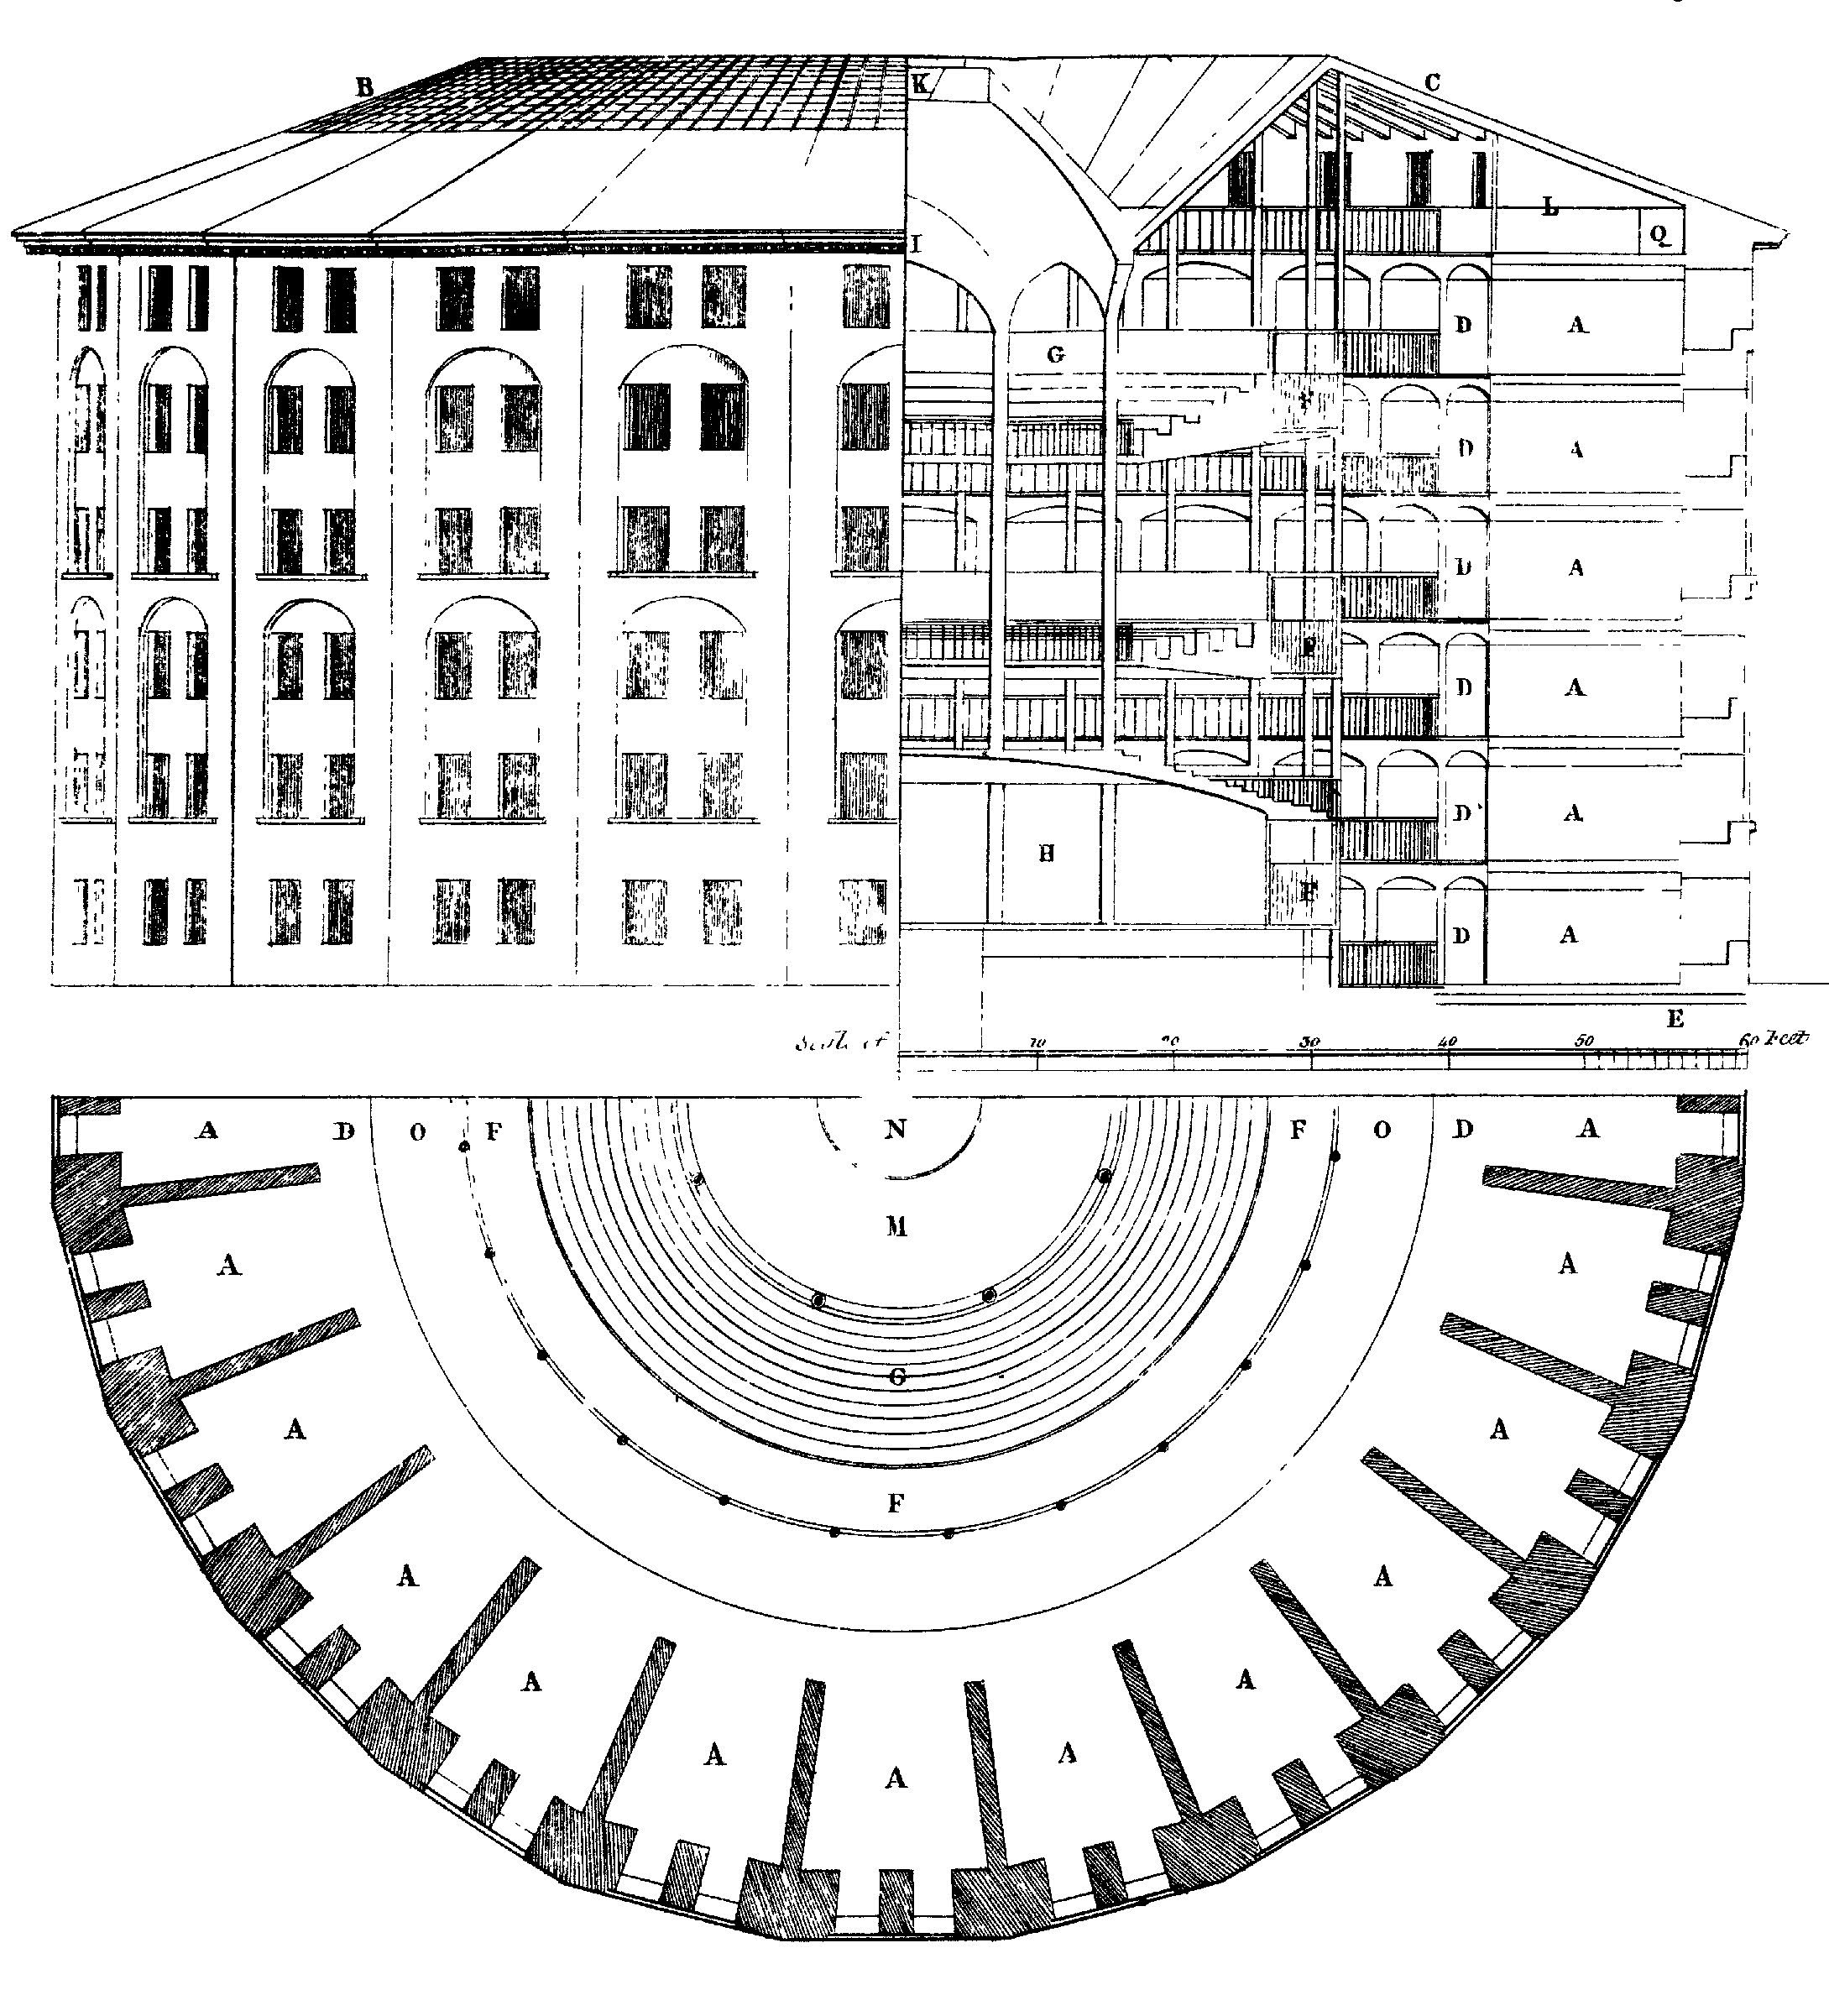 شکل 6.3: پنپٹکن جیل کے لئے ڈیزائن، سب سے پہلے جیریمی برنٹھم کی طرف سے تجویز کردہ. مرکز میں، ایک غیر معمولی سیئیر ہے جو ہر کسی کے رویے کا مشاہدہ کرسکتا ہے لیکن مشاہدہ نہیں کیا جا سکتا. ویلی ریولی، 1791 (ڈرائیو: ویکیپیڈیا العام) کی طرف سے ڈرائنگ.